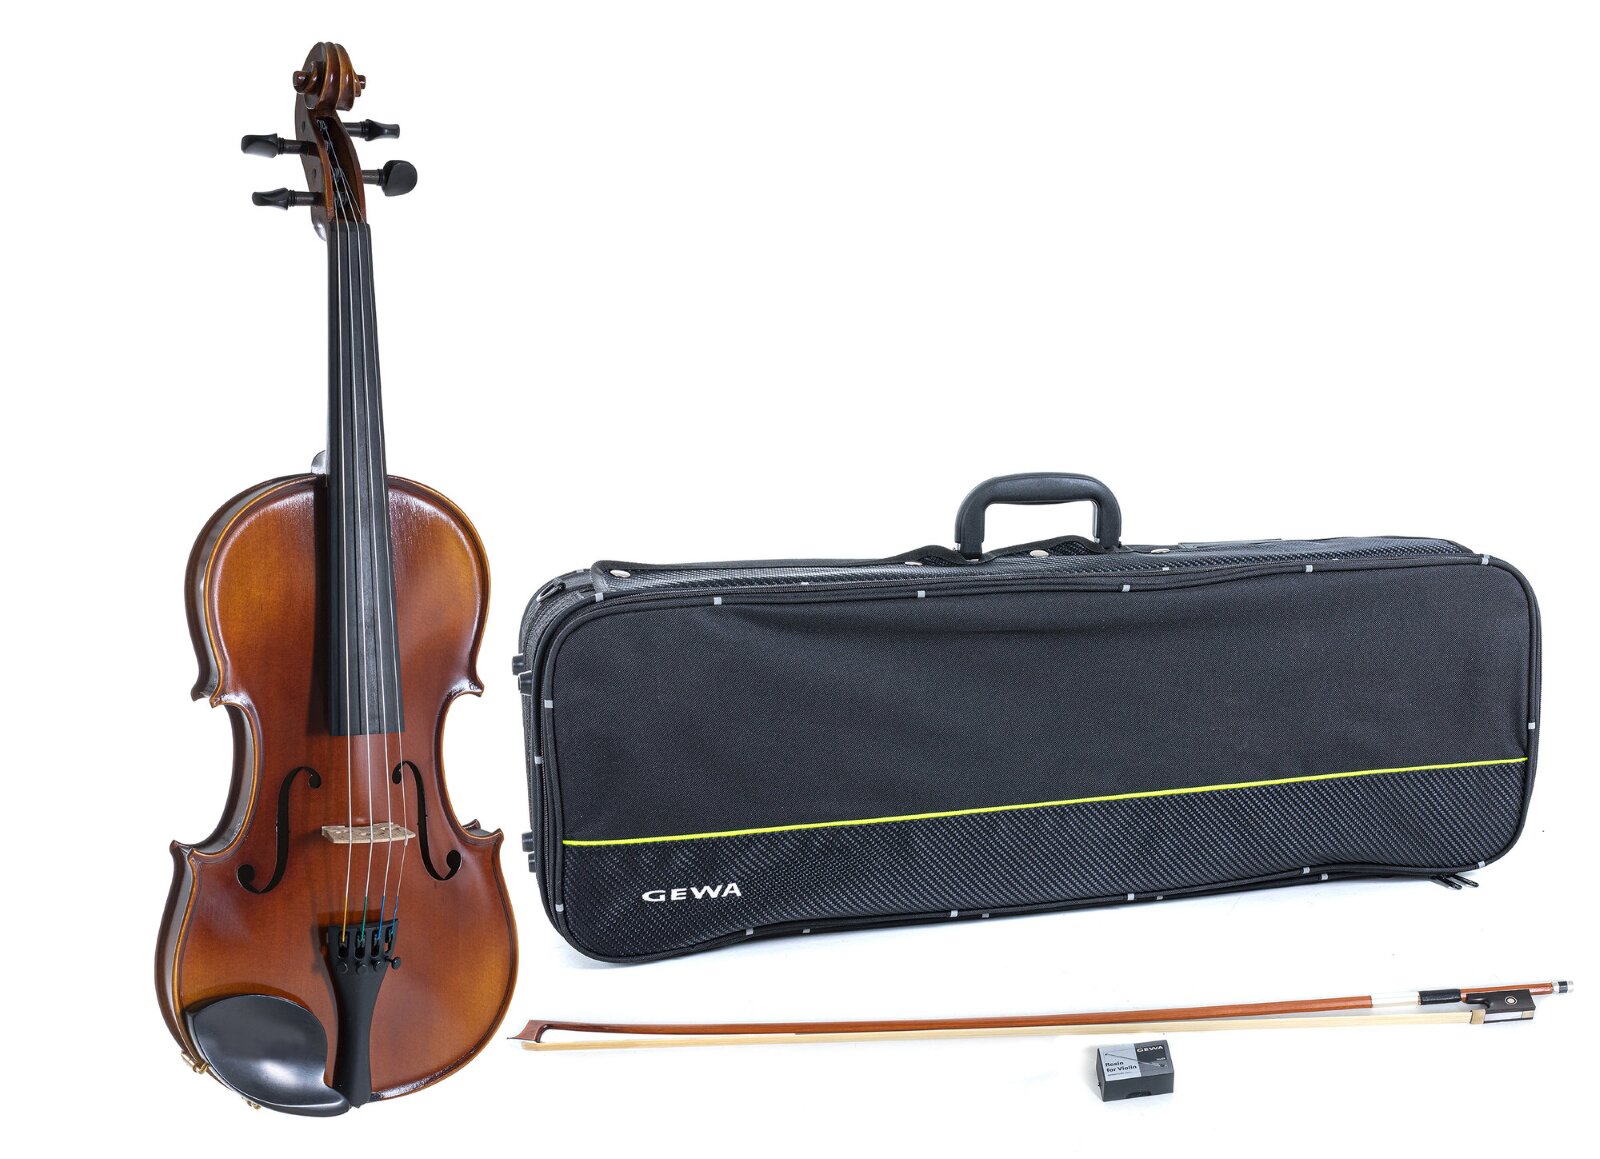 Gewa Ensemble Allegro Violine 1/2 (Violine, Etui, Bogen, Kinnhalter und Kolophonium) : photo 1